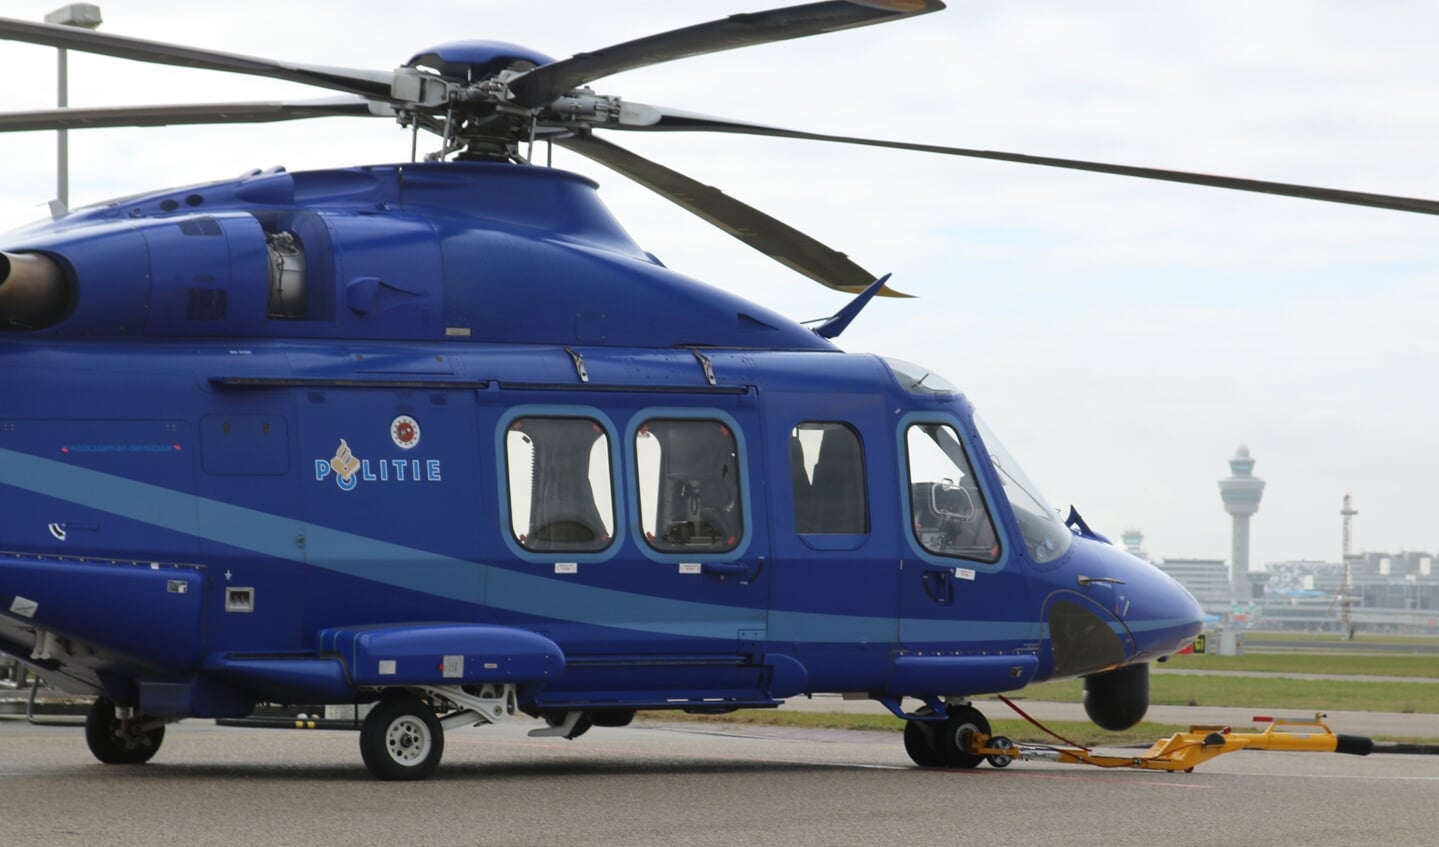 De grotere AgustaWestland AW139 op het platform op Schiphol-Oost.